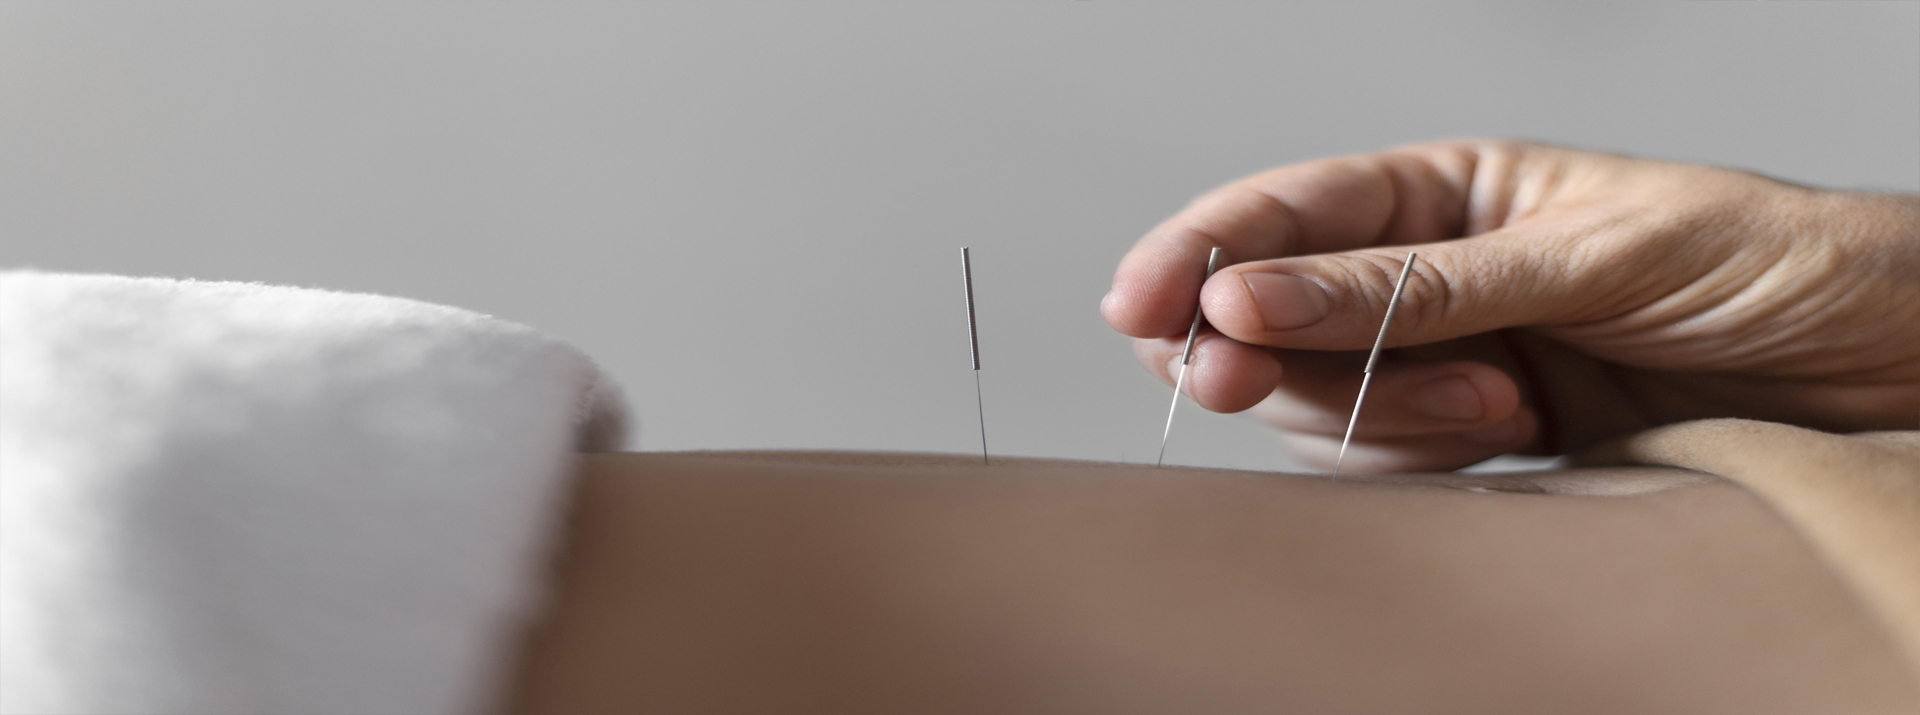 La acupuntura es la disciplina médica 
más estudiada  y contrastada científicamente